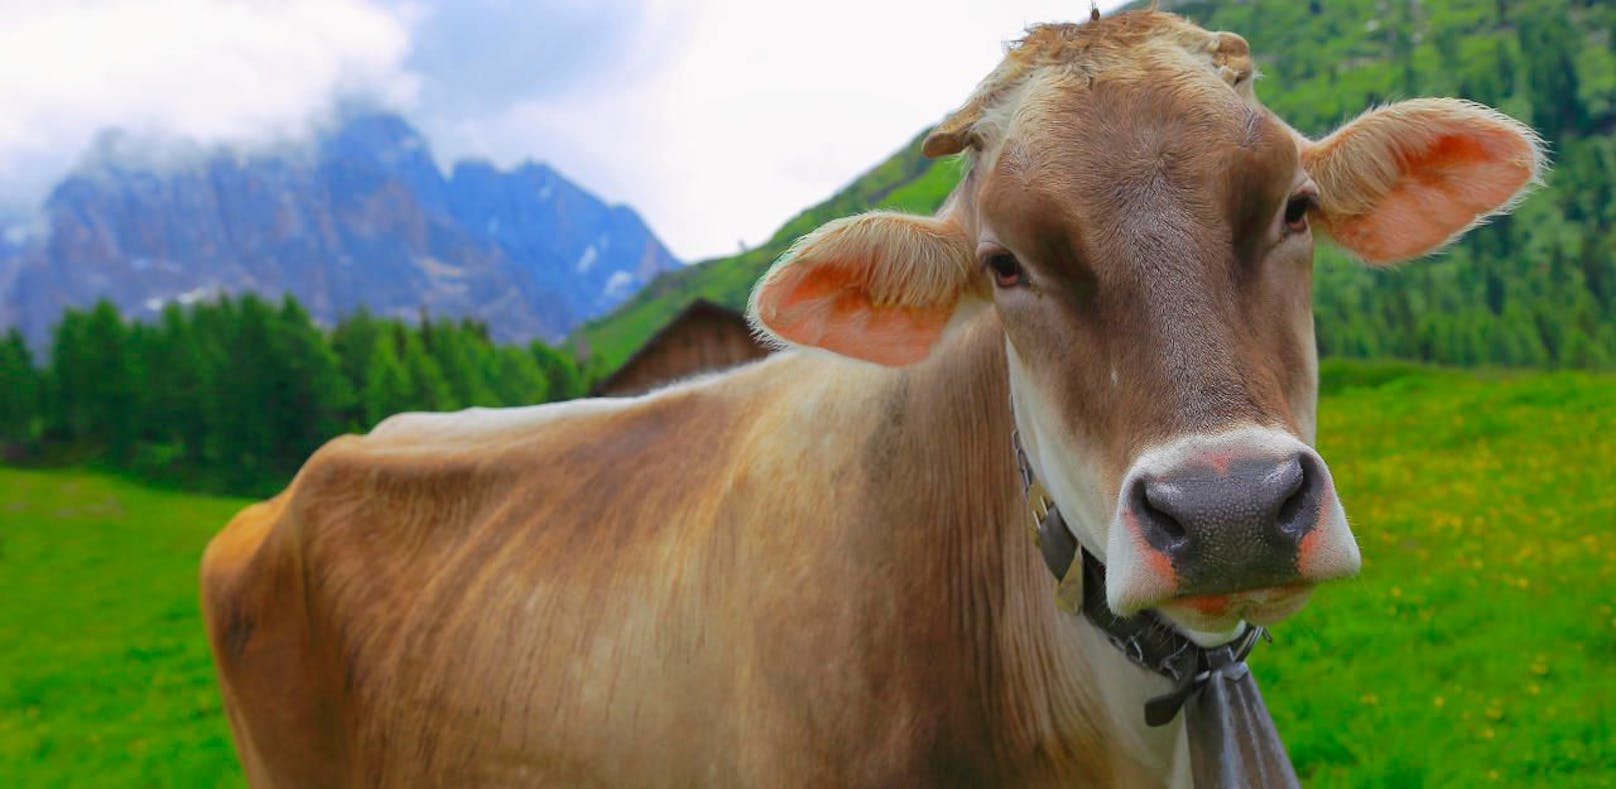 Milchbauern sind sauer:  EU fordert Förderung zurück